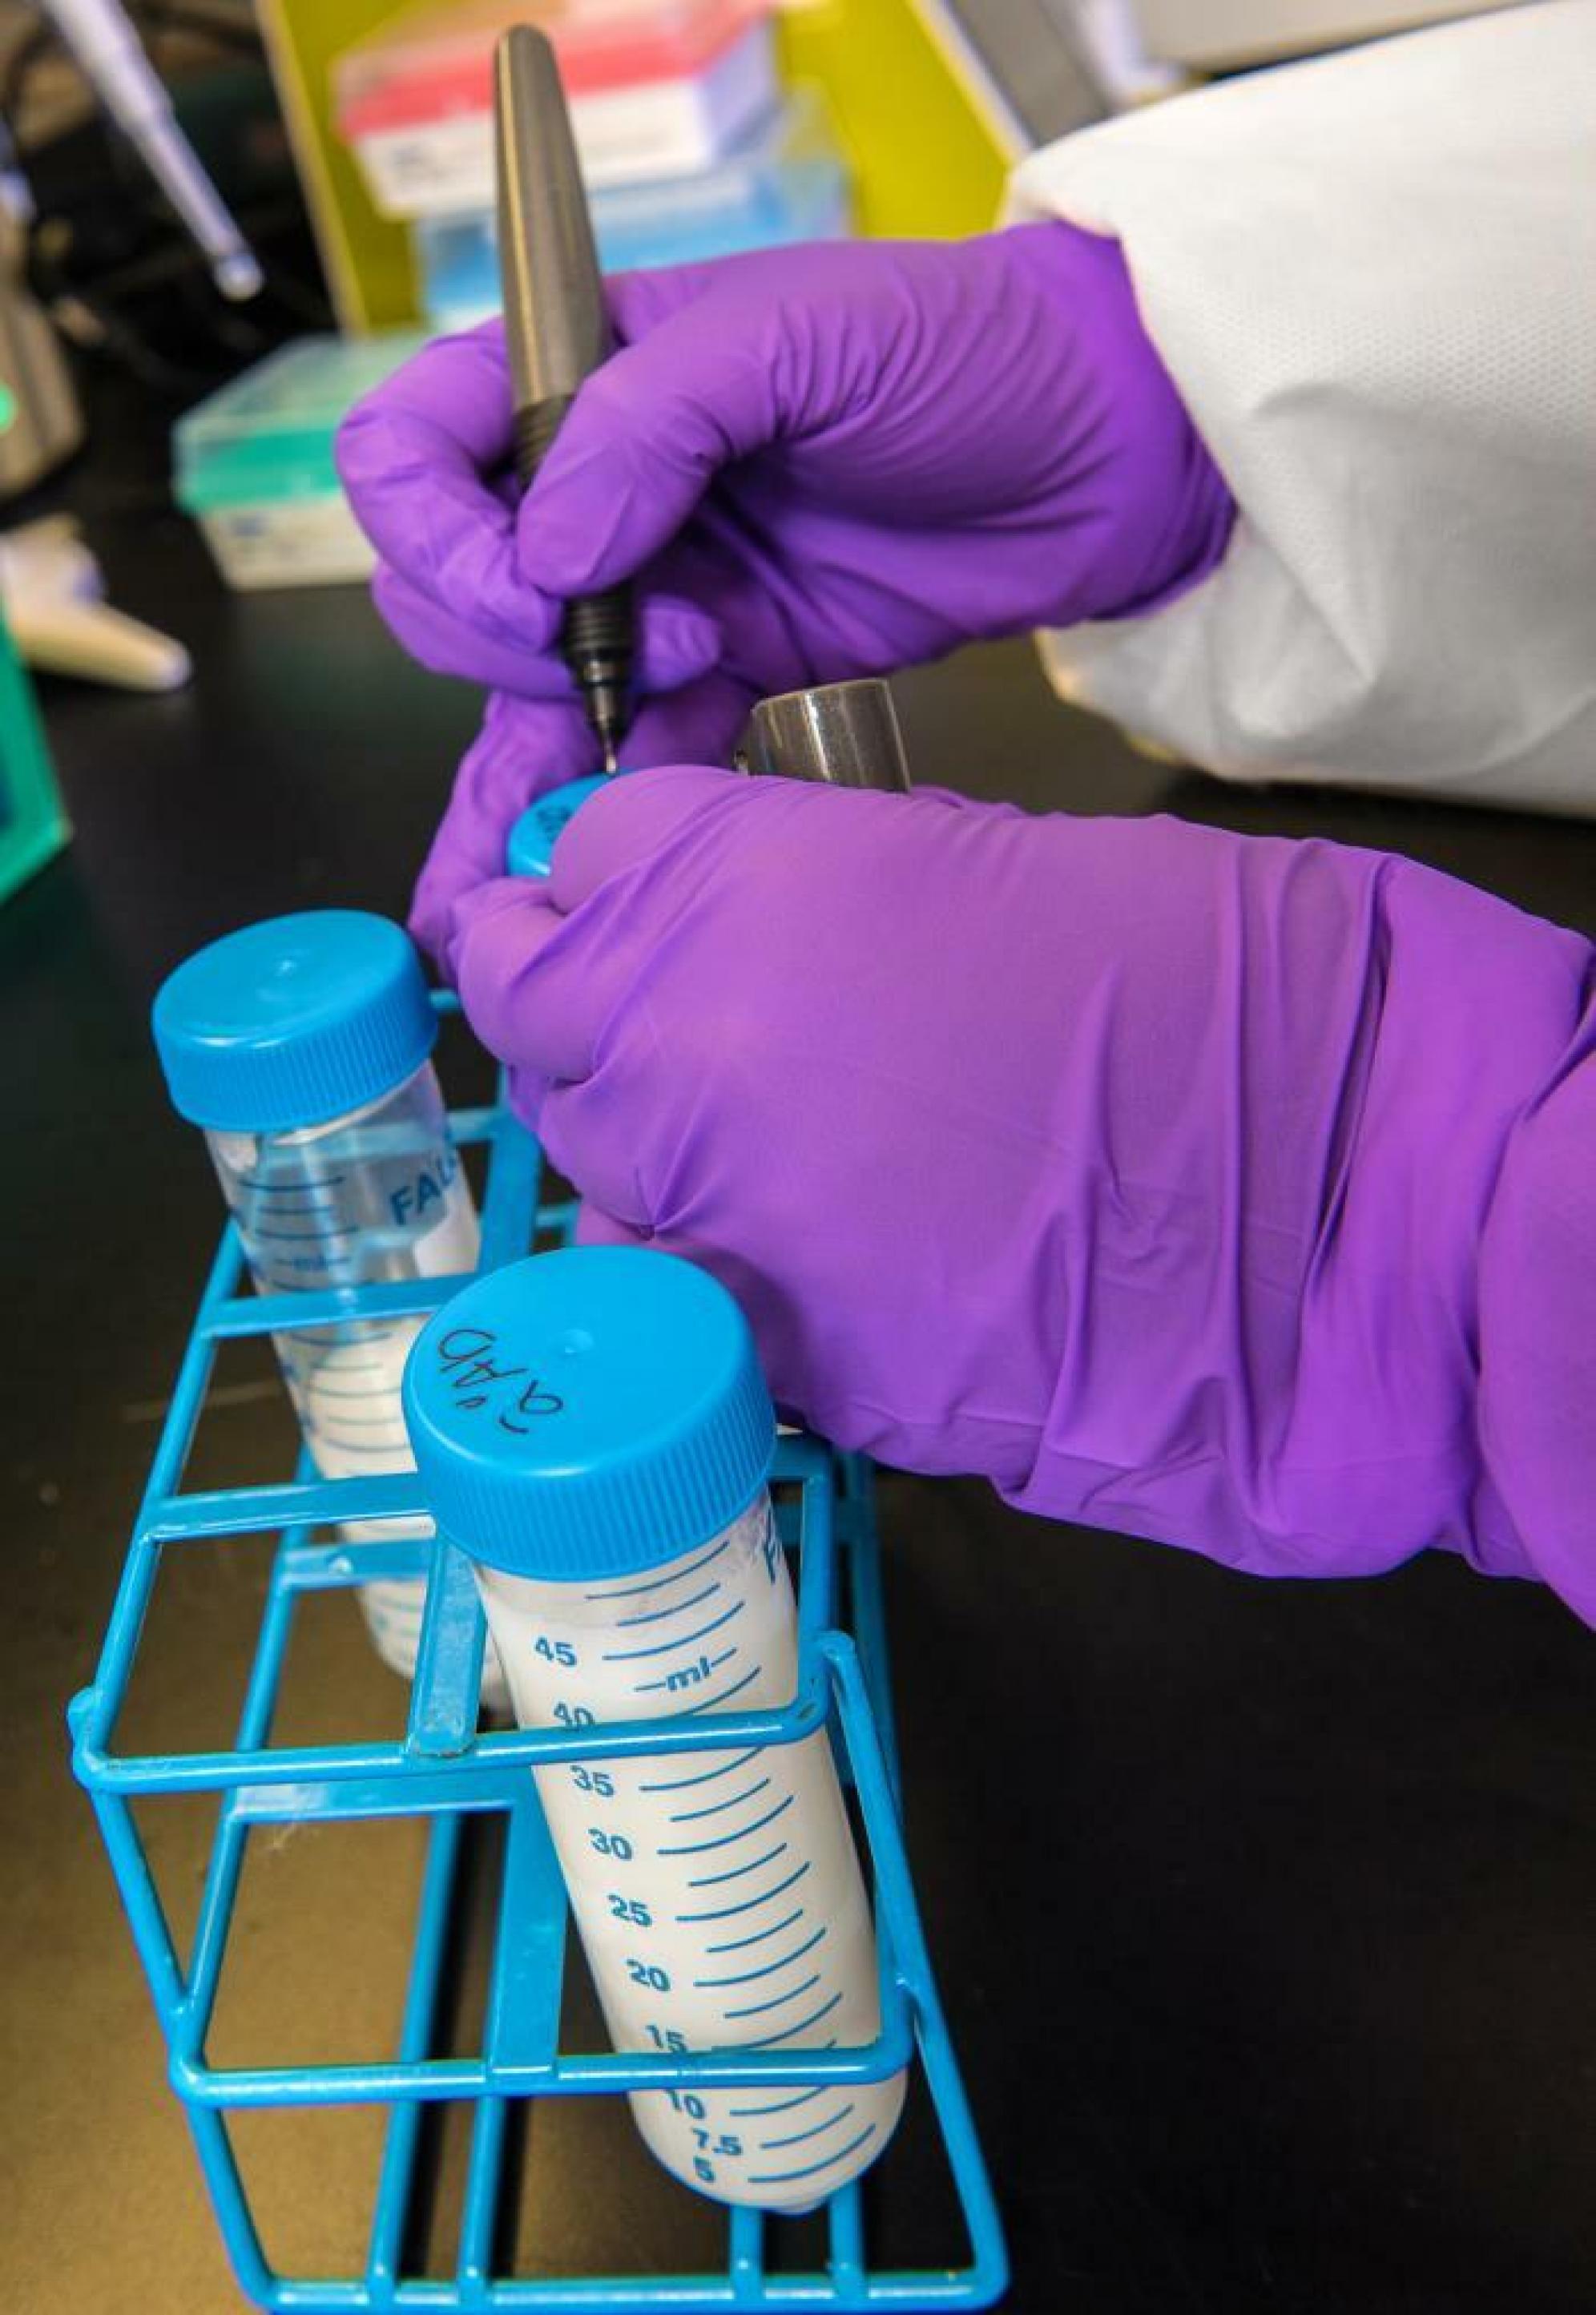 Drei Röhrchen mit Blutplasma werden im Labor auf Antikörperhin untersucht. Man sieht zwei Hände mit lila Handschuhen, die gerade eines der Röhrchen beschriften.